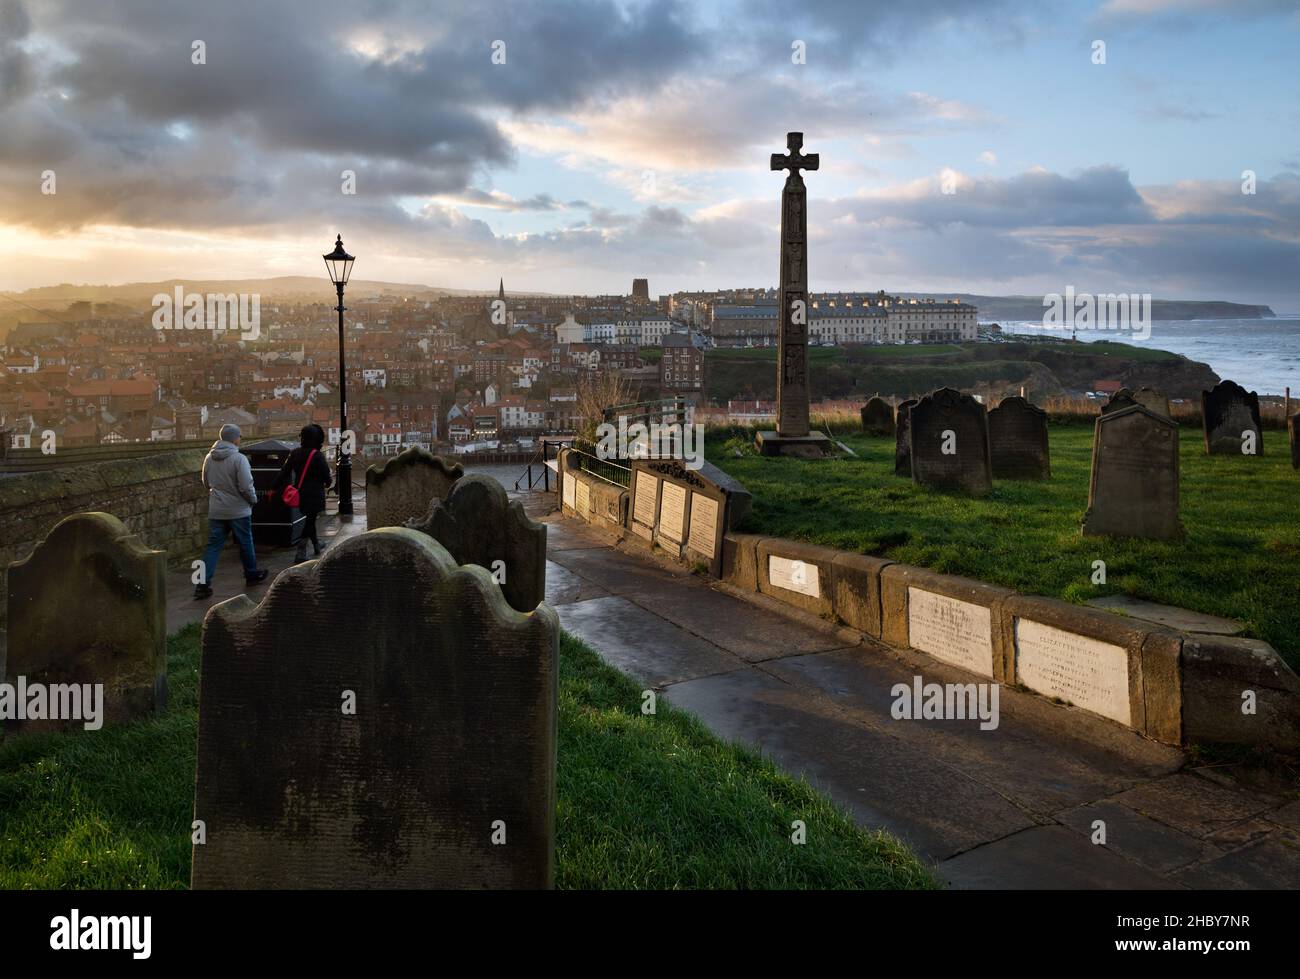 La vista desde el cementerio de St Mary al otro lado del puerto hasta el West Cliff, Whitby, North Yorkshire, Reino Unido. Foto de stock